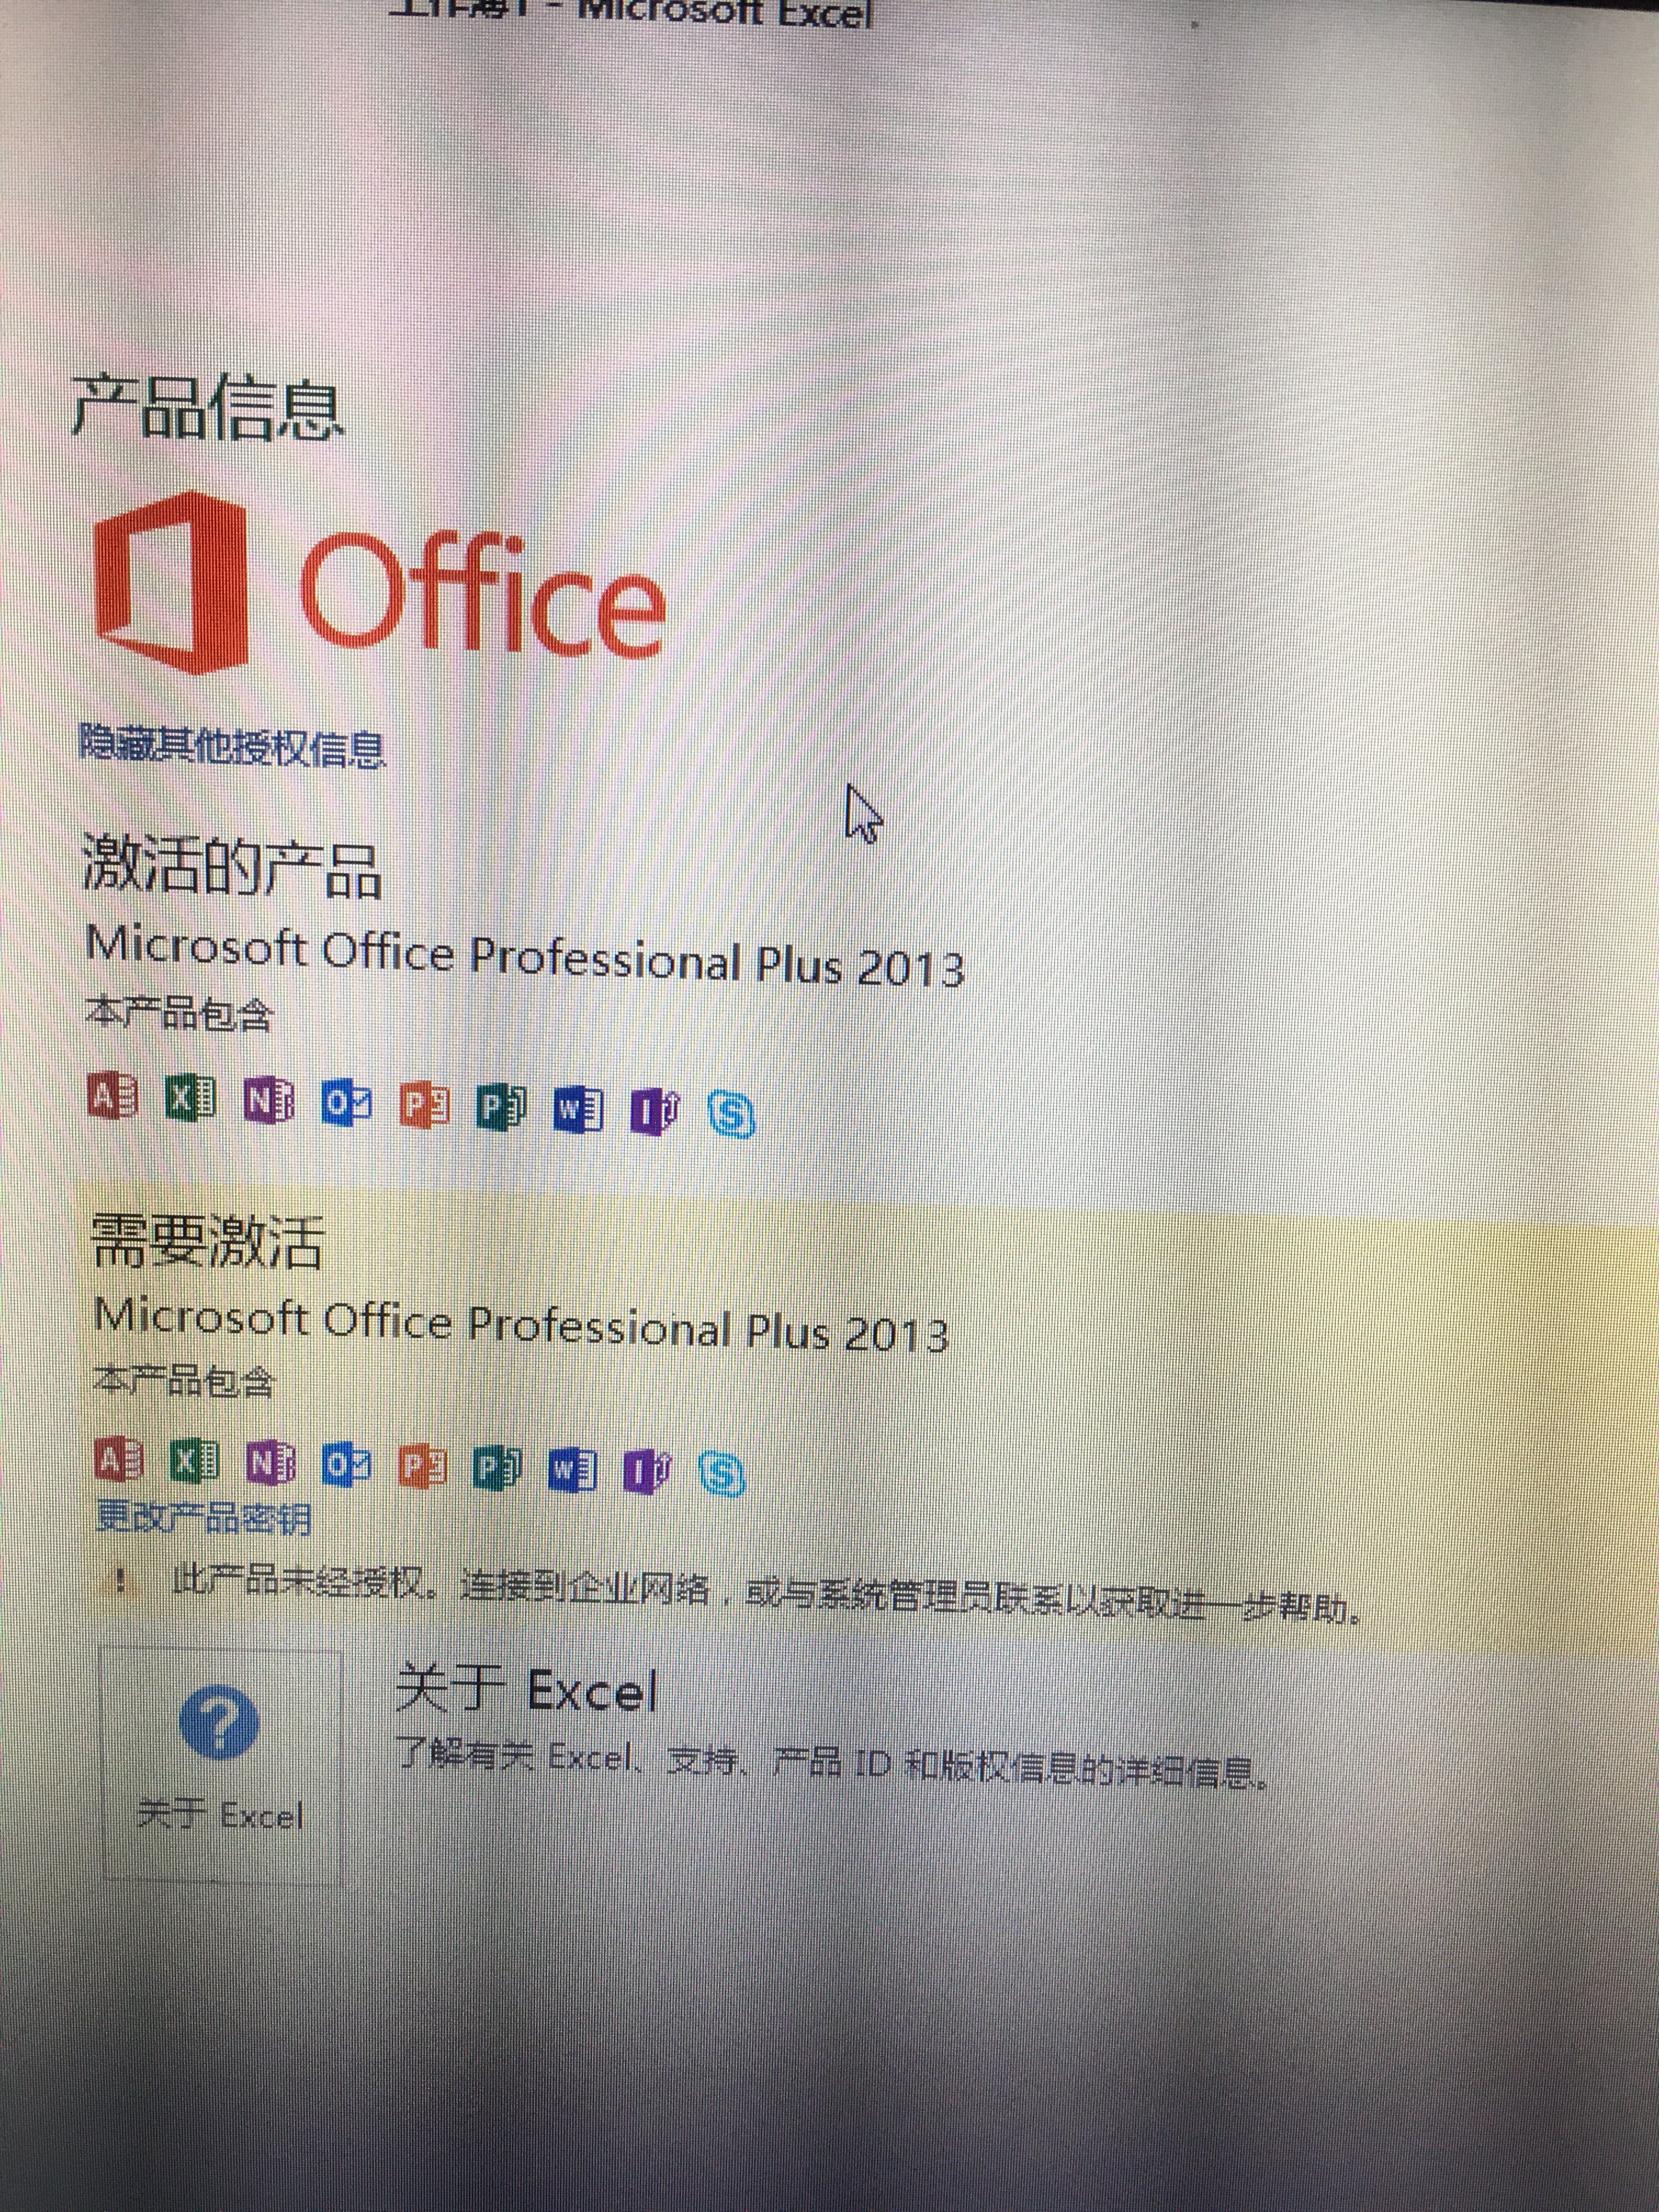 Office 2013显示两个激活状态